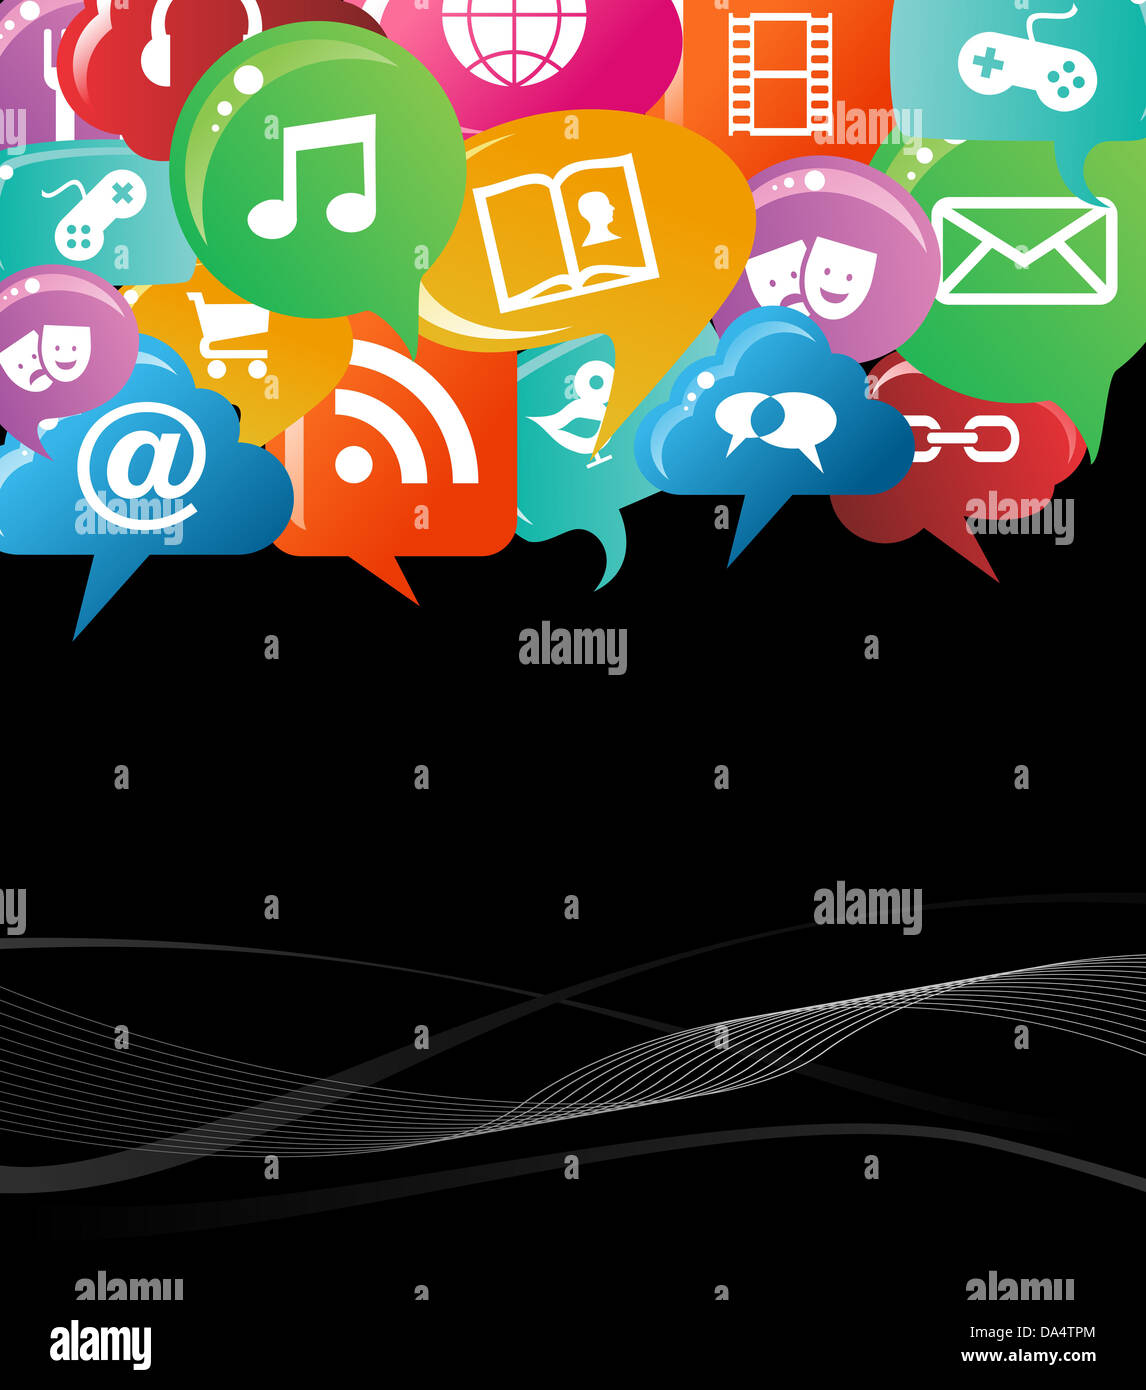 Soziales Netzwerksymbole in bunte Blase Rede Hintergrund gesetzt. Vektor-Datei geschichtet für einfache Handhabung und individuelle Farbgebung. Stockfoto